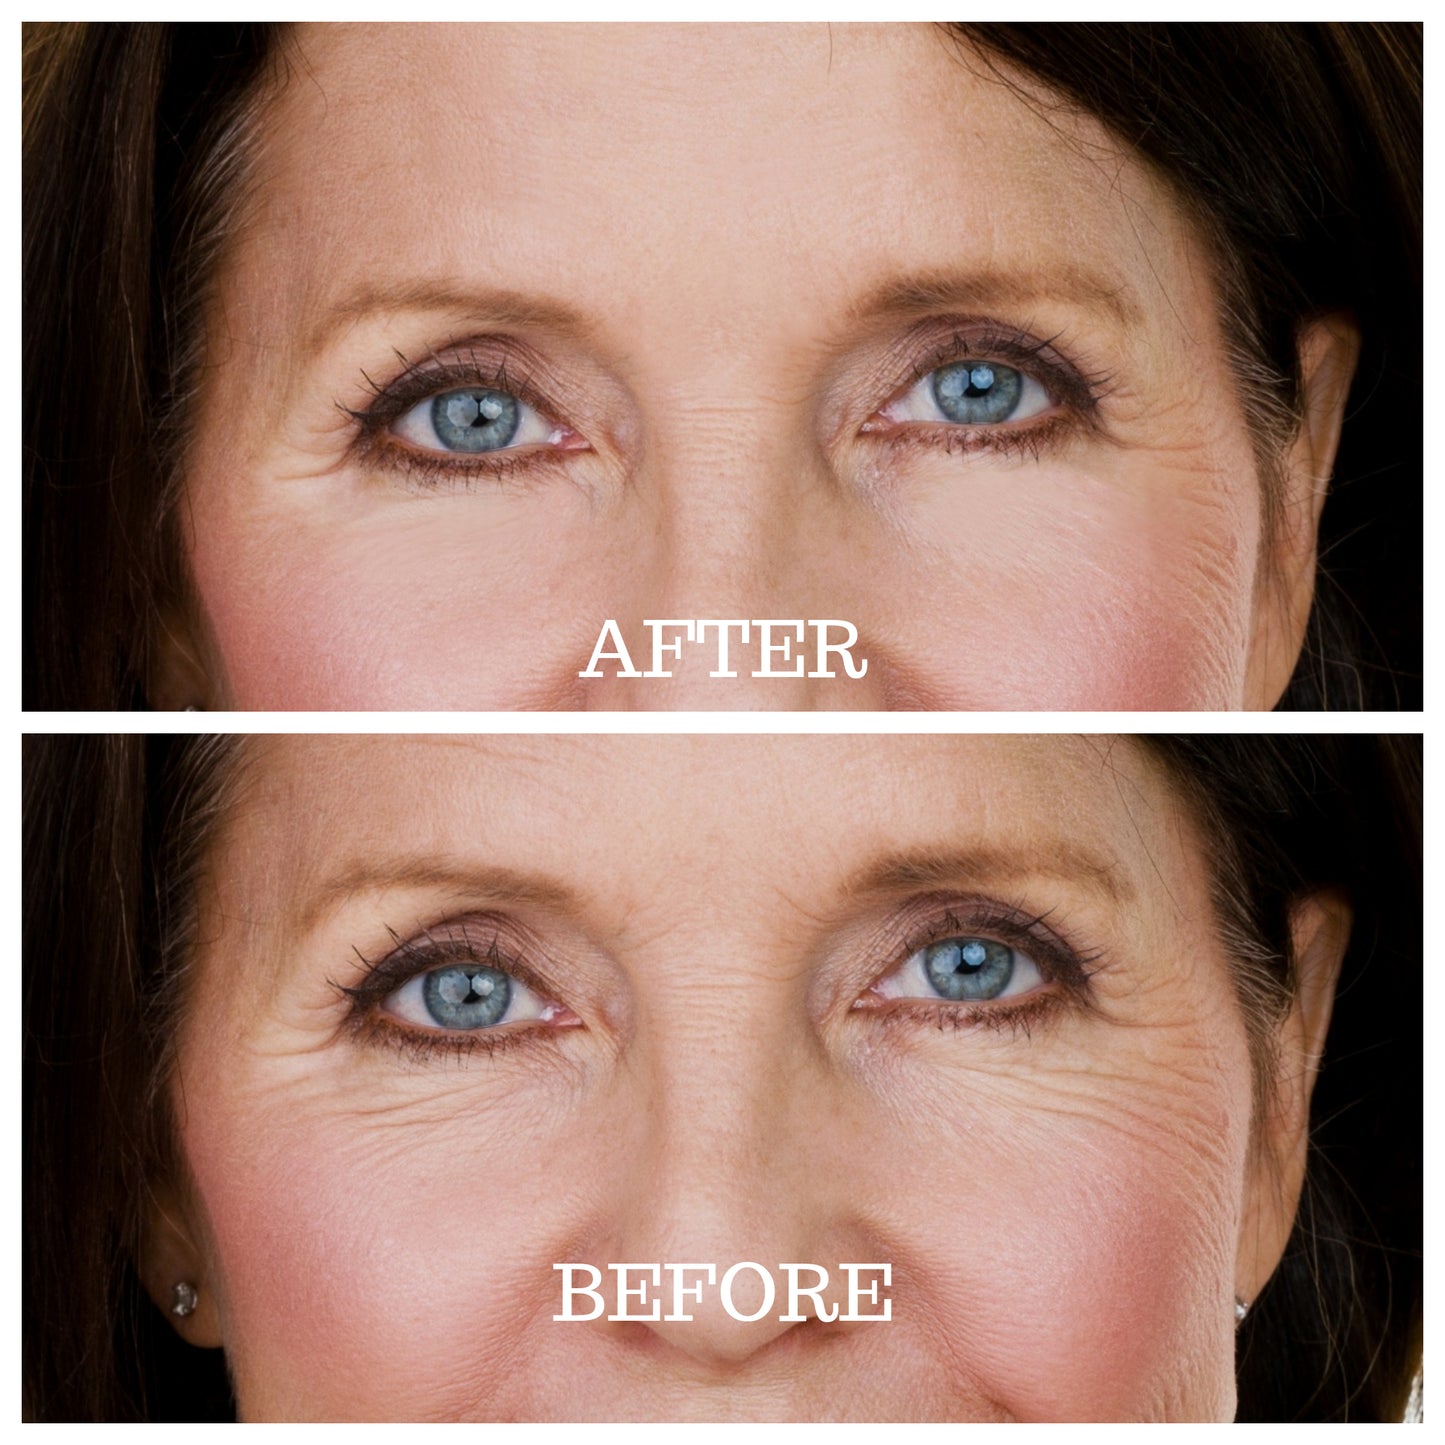 Skin Plumping Eye Pads beauty patch nighttime treatment | Dreambox Beauty